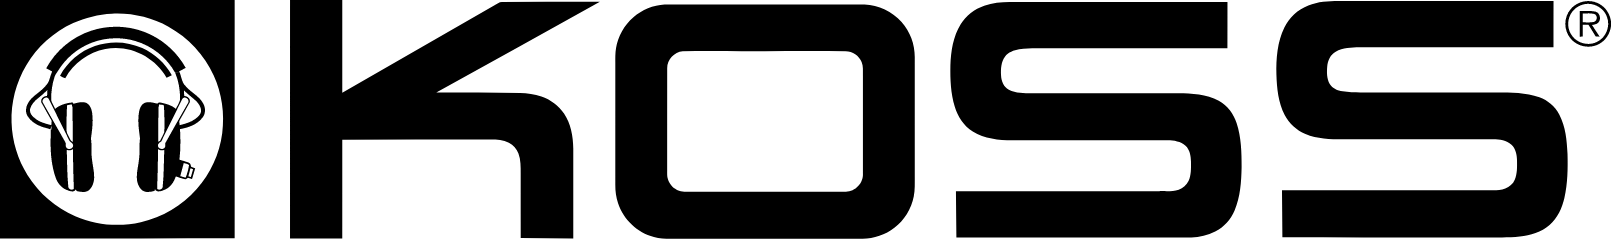 Koss logo large (transparent PNG)